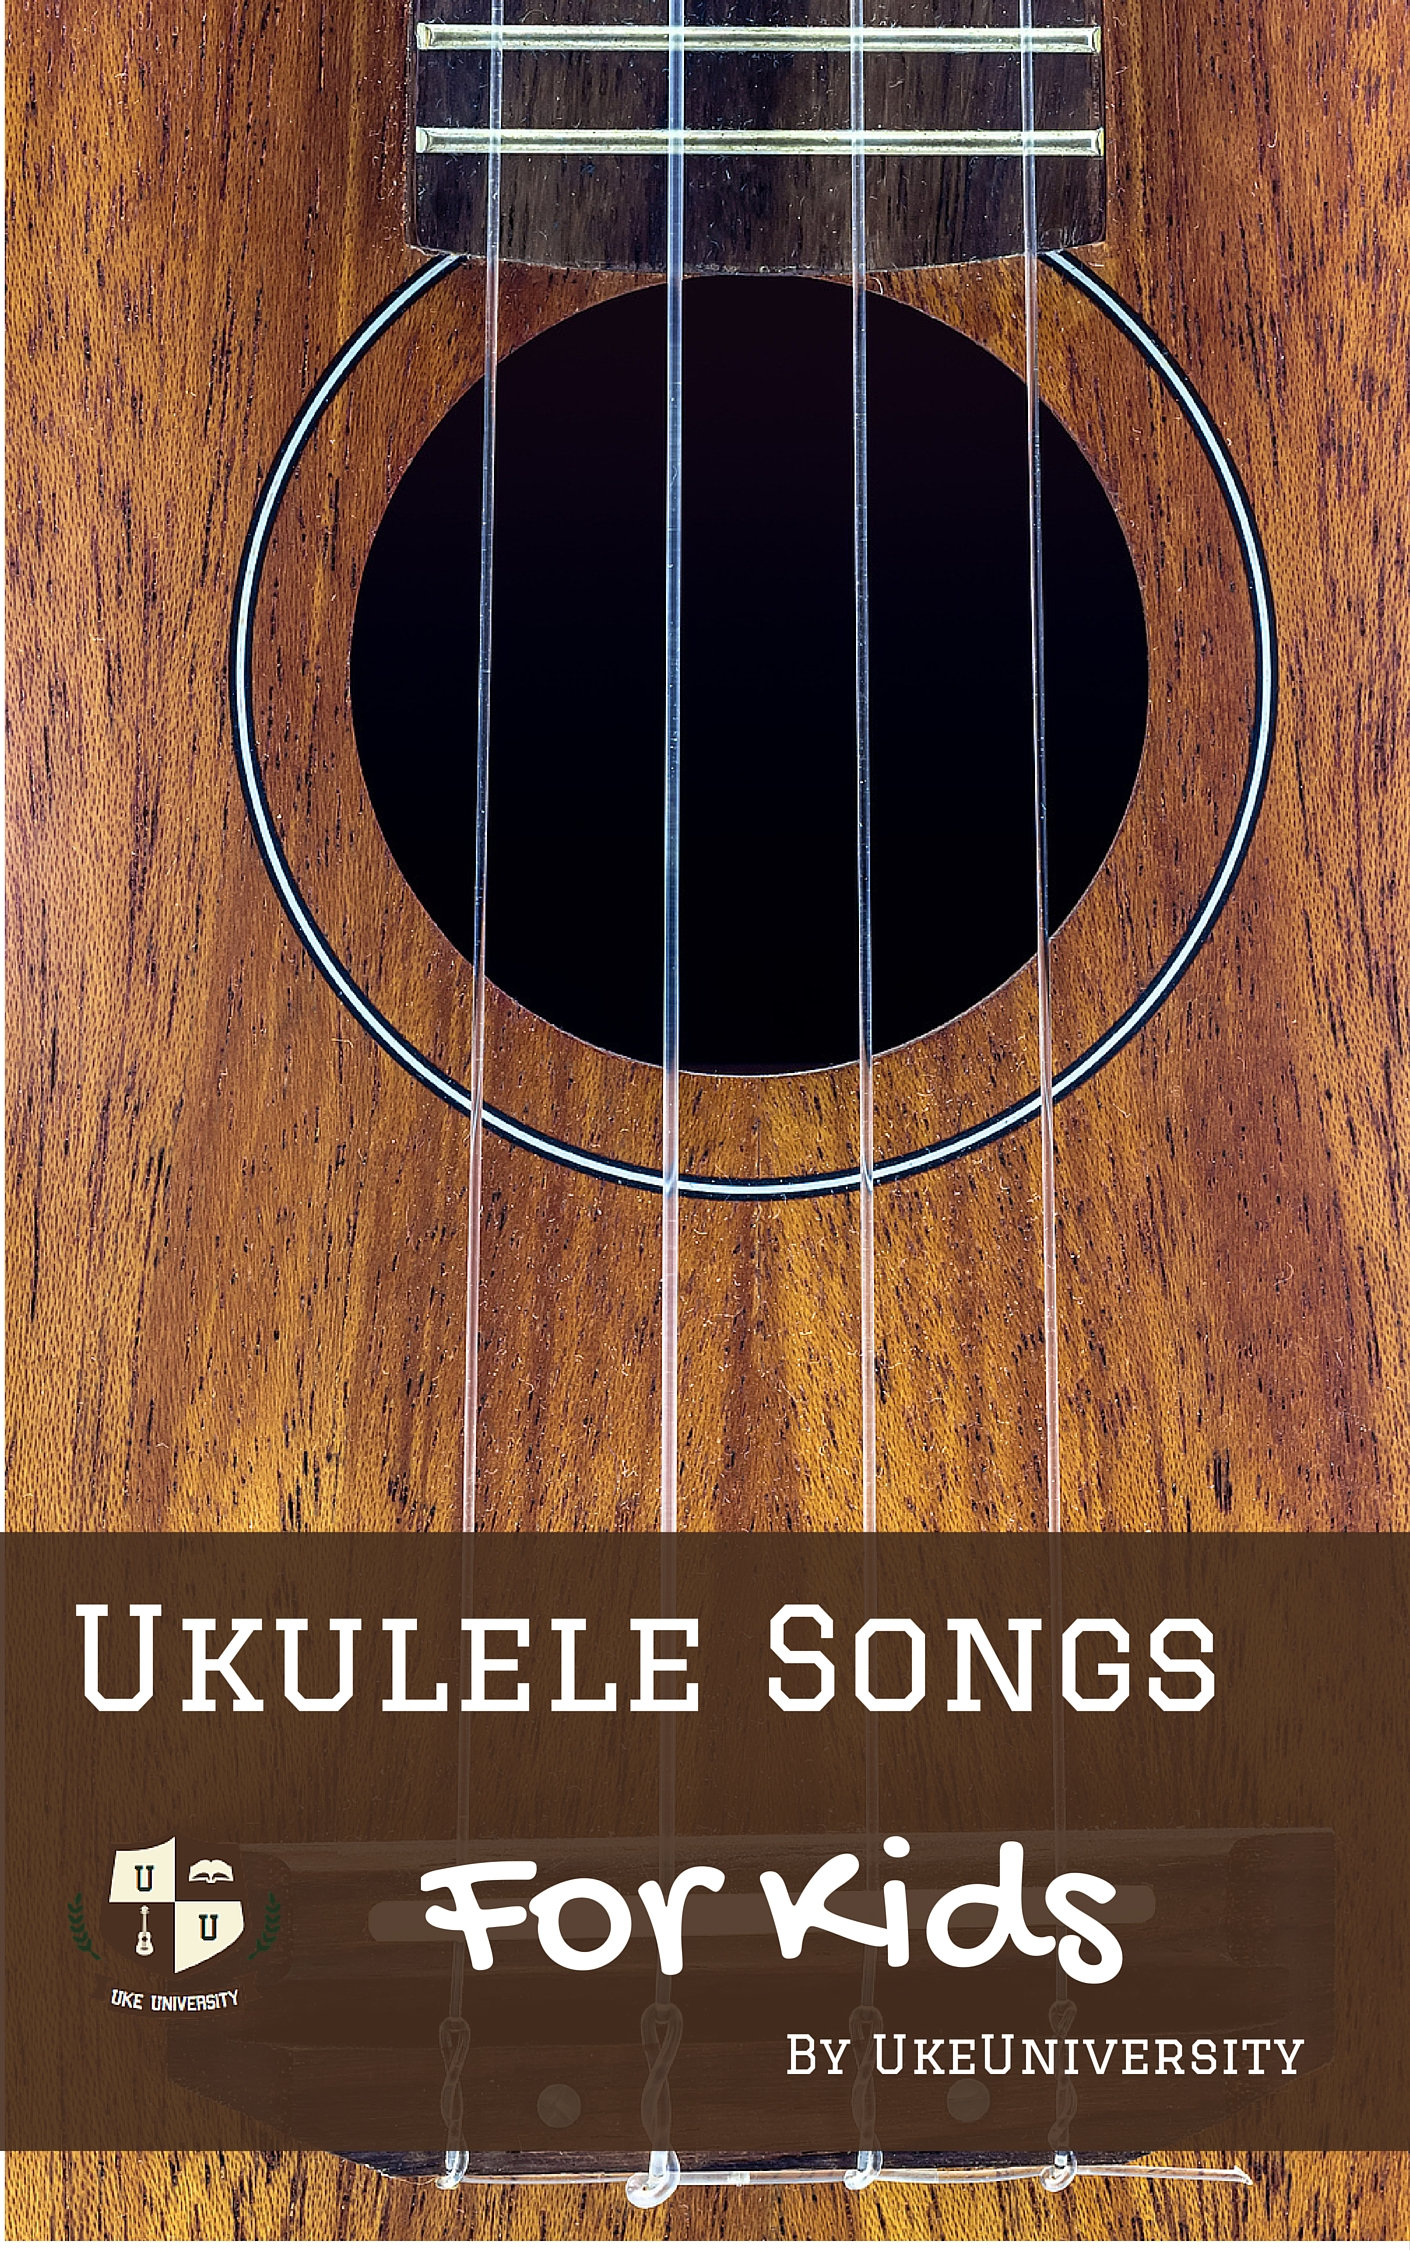 Ukulele songs for kids